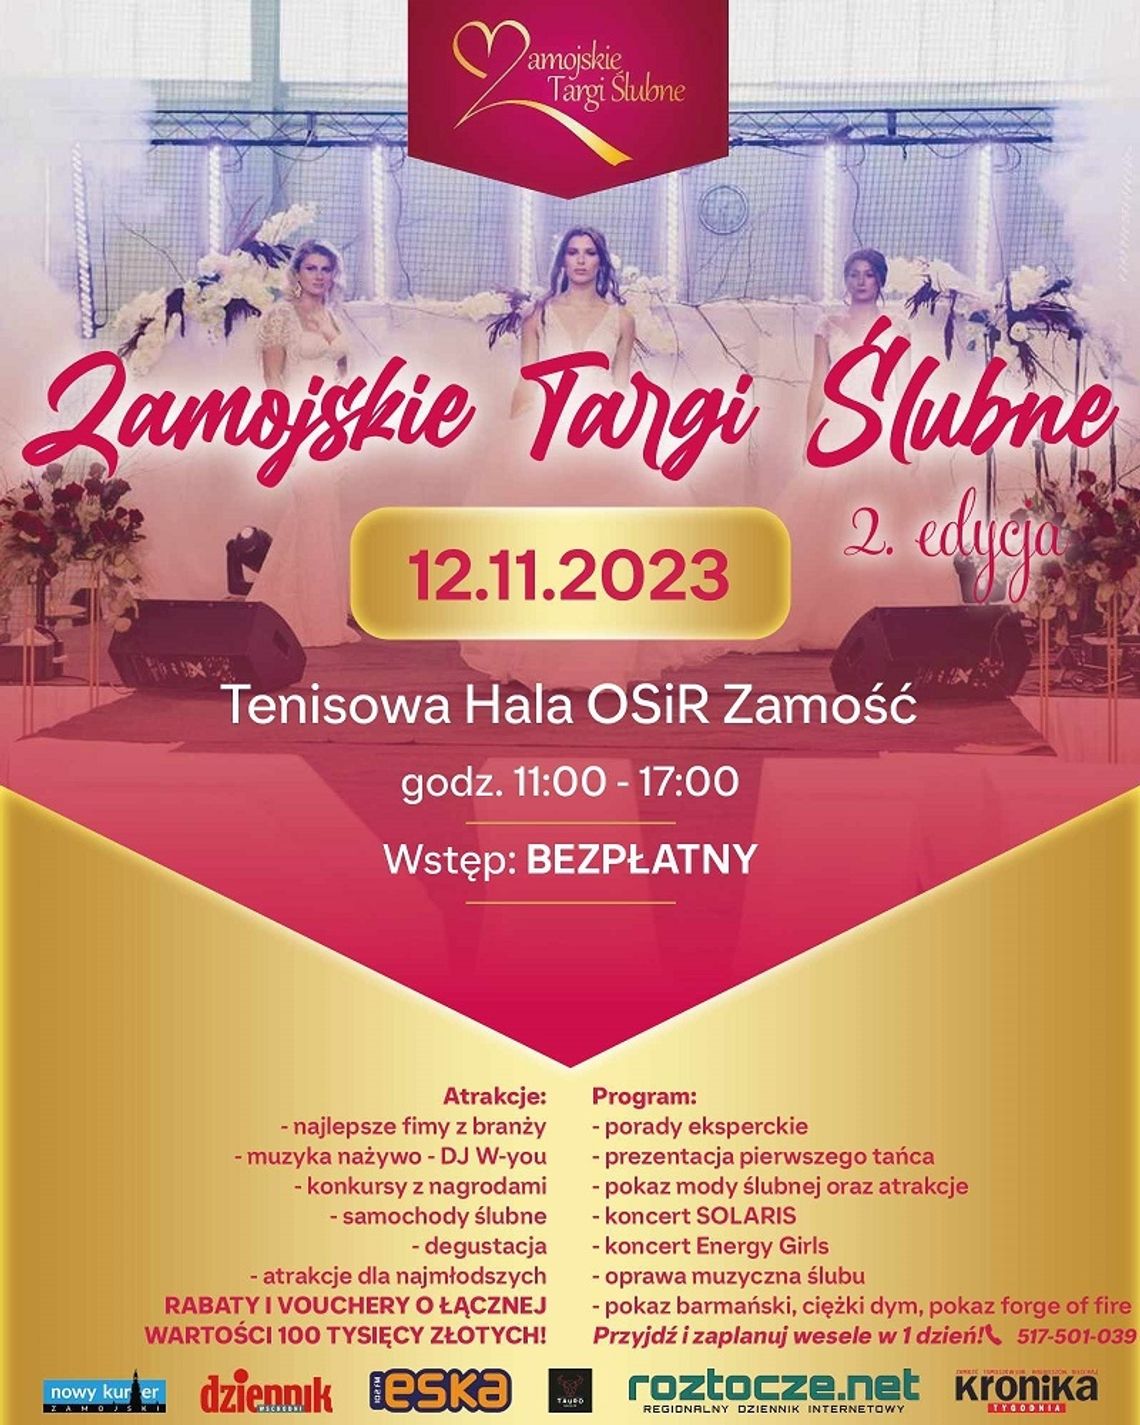 Druga edycja Zamojskich Targów Ślubnych odbędzie się w niedzielę 12 listopada w hali tenisowej OSiR w Zamościu.